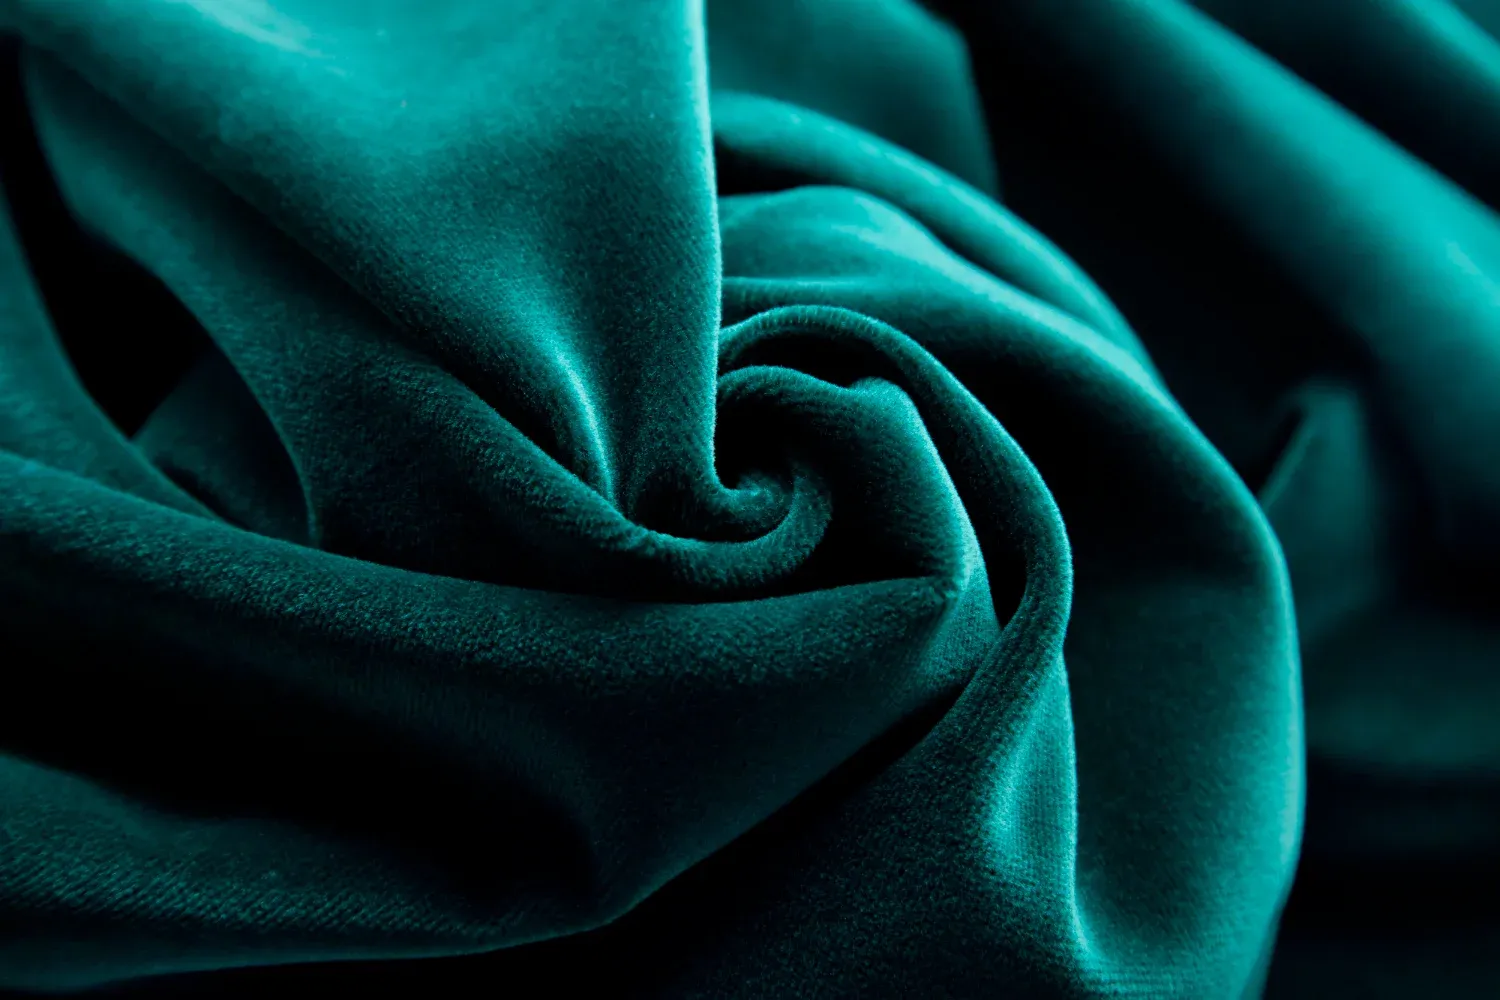 Velvet fabric